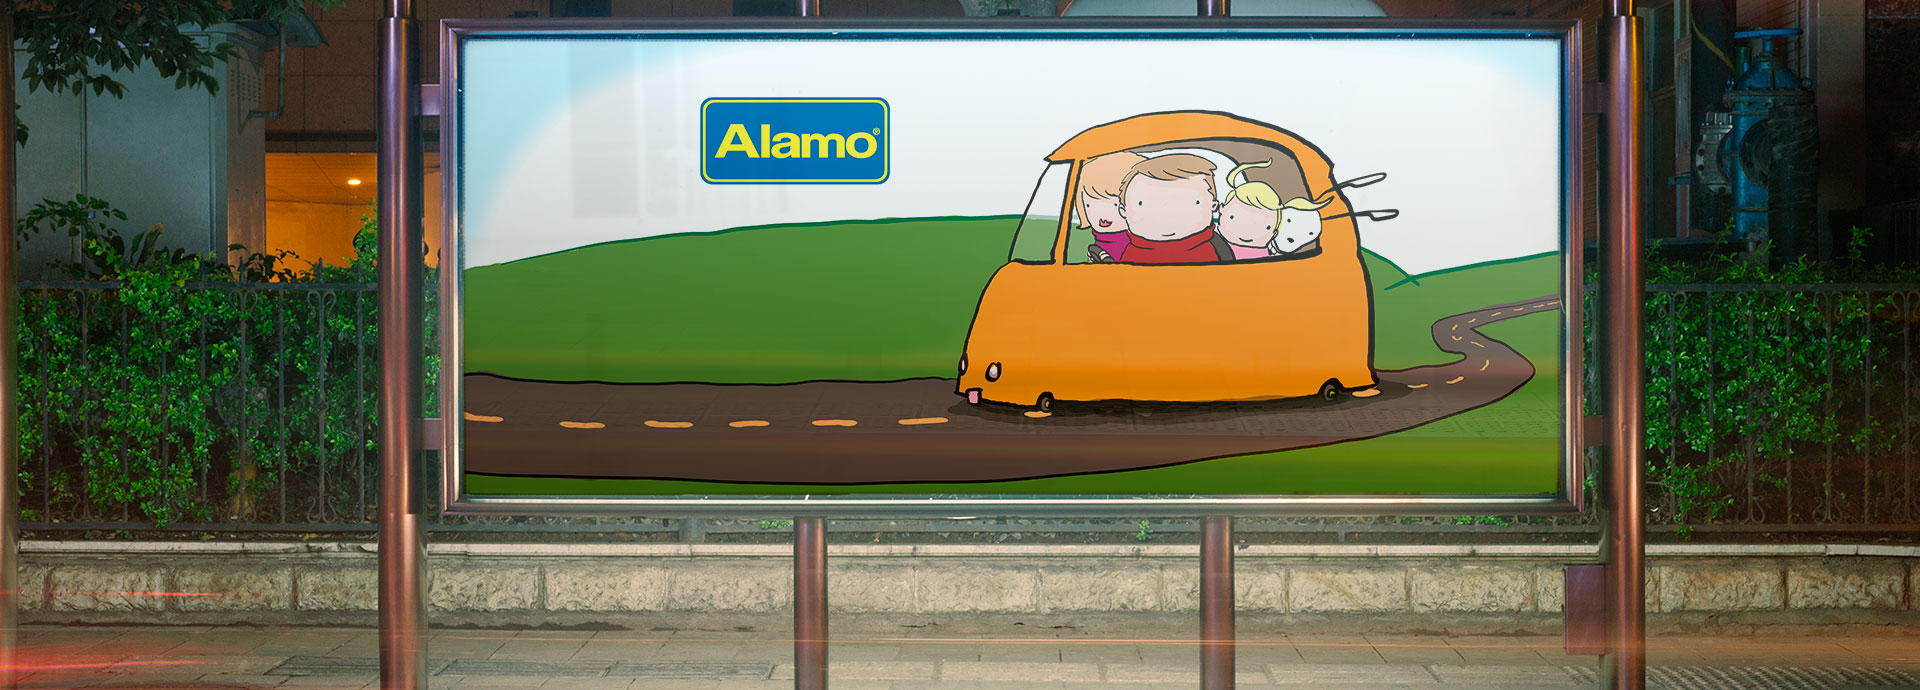 アラモレンタカーAlamo Rent A Carの最安値を３０秒で比較予約